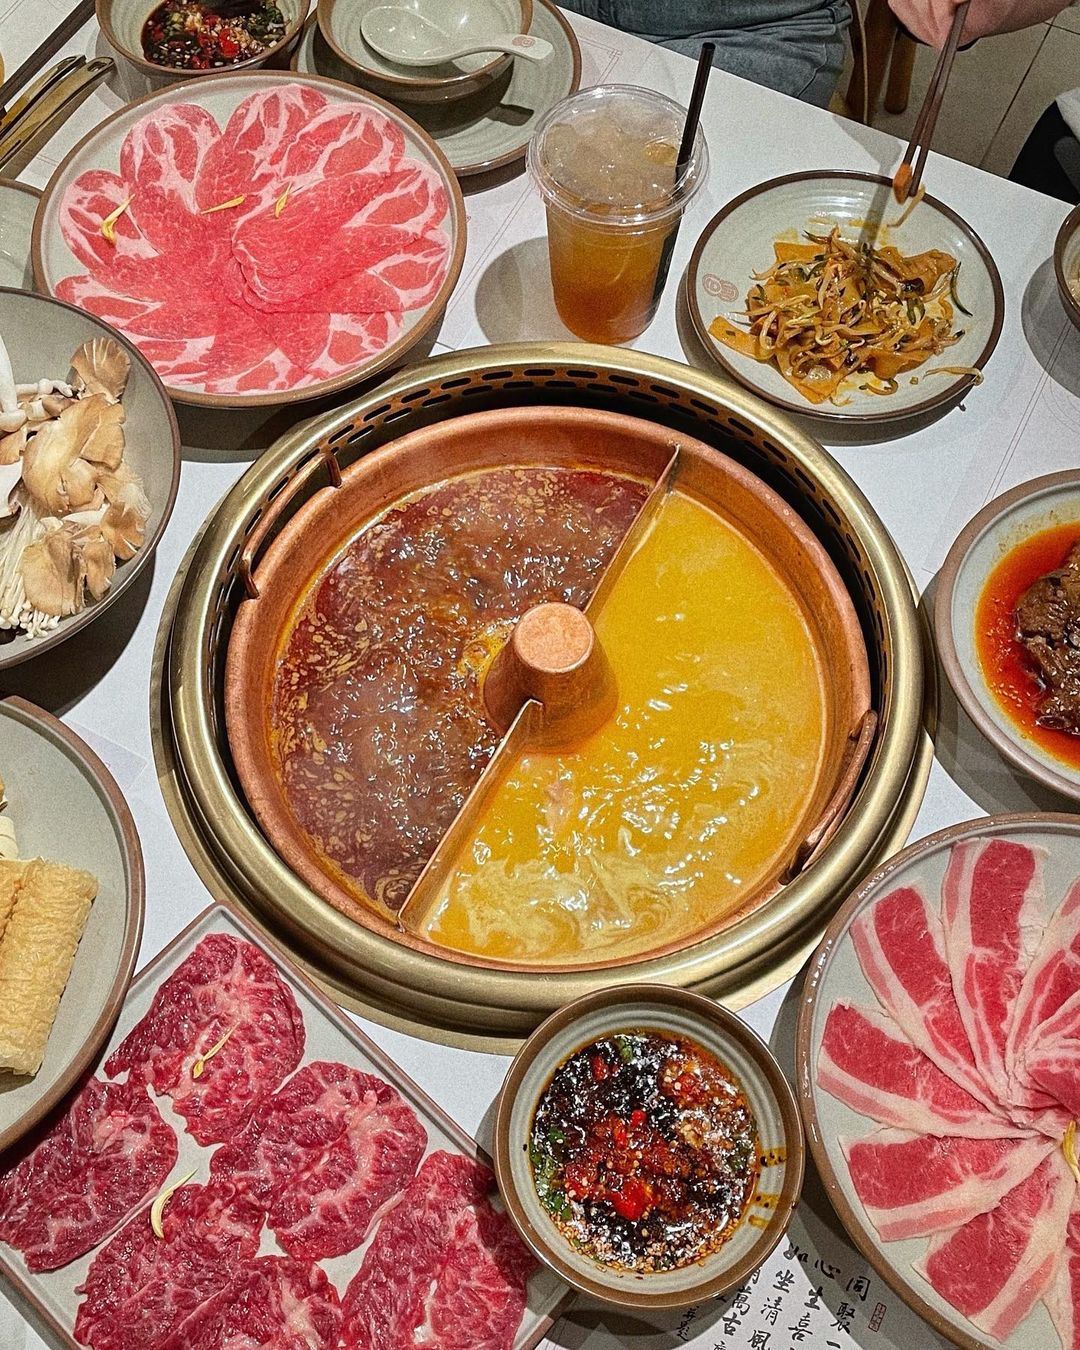 tong xin ru yi hotpot - assorted meats